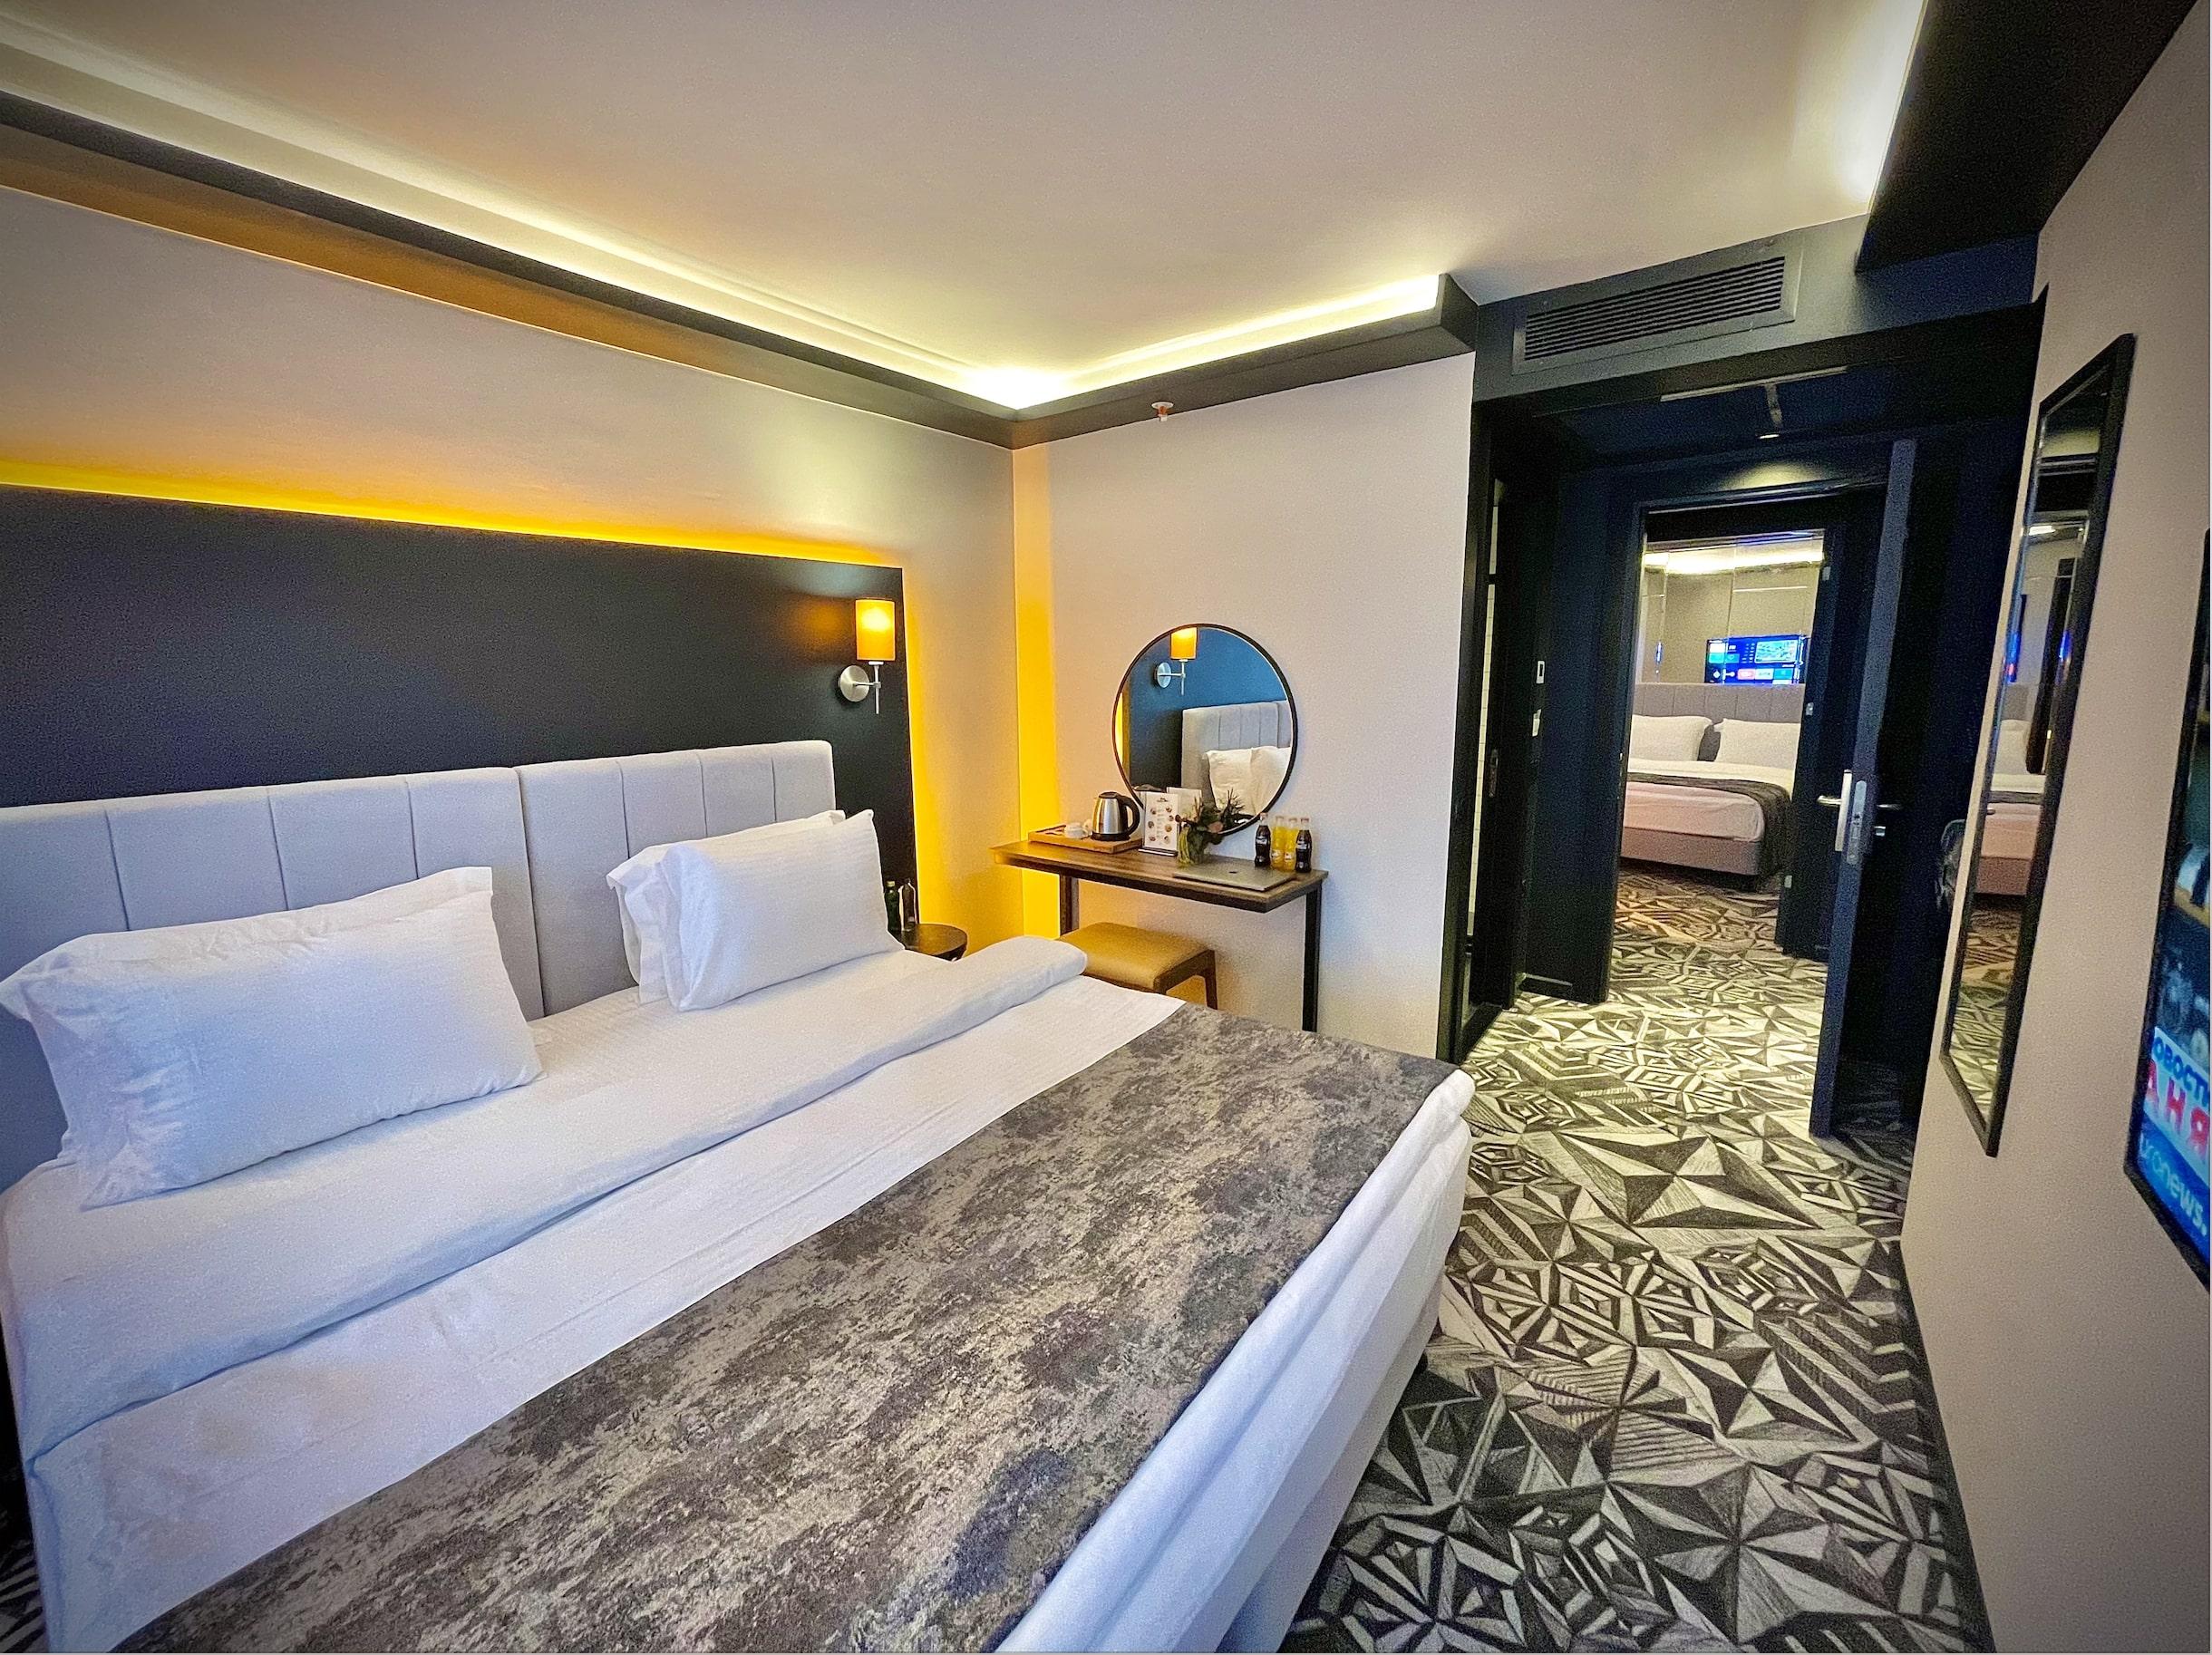 Hotel Weingart Provincia di Istanbul Esterno foto